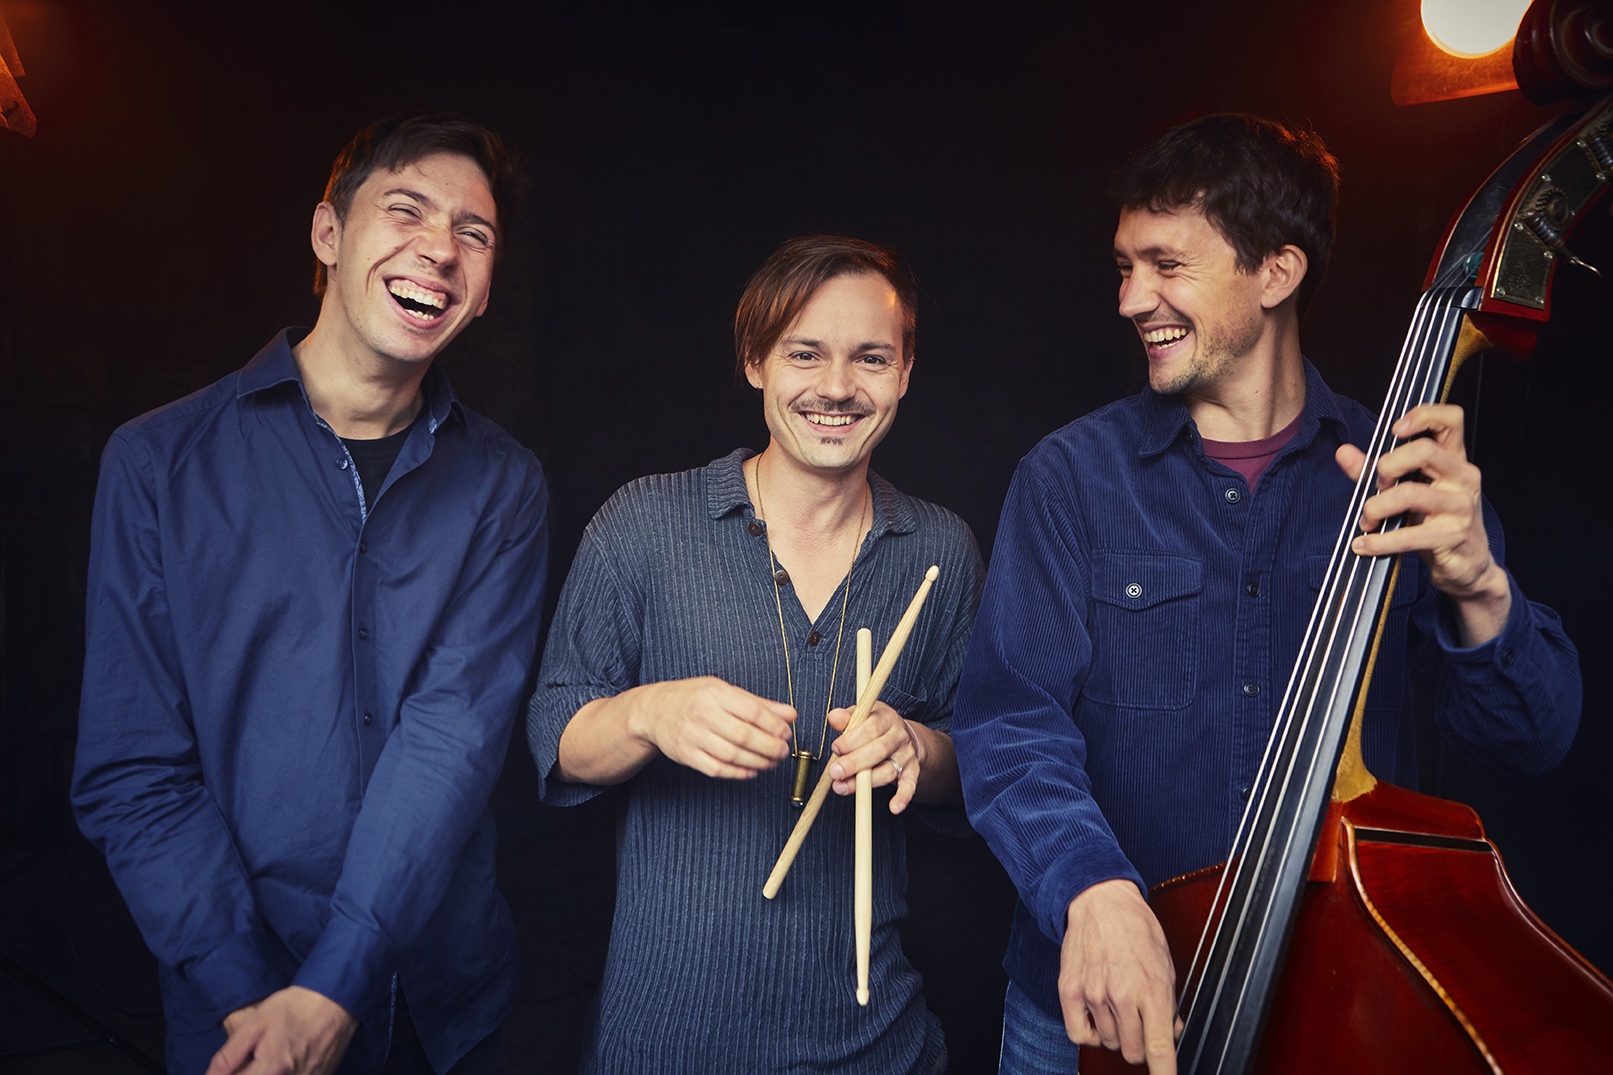 Foto von drei Personen die lachen, eine hält einen Bass, eine andere Schlagzeugstöcke.